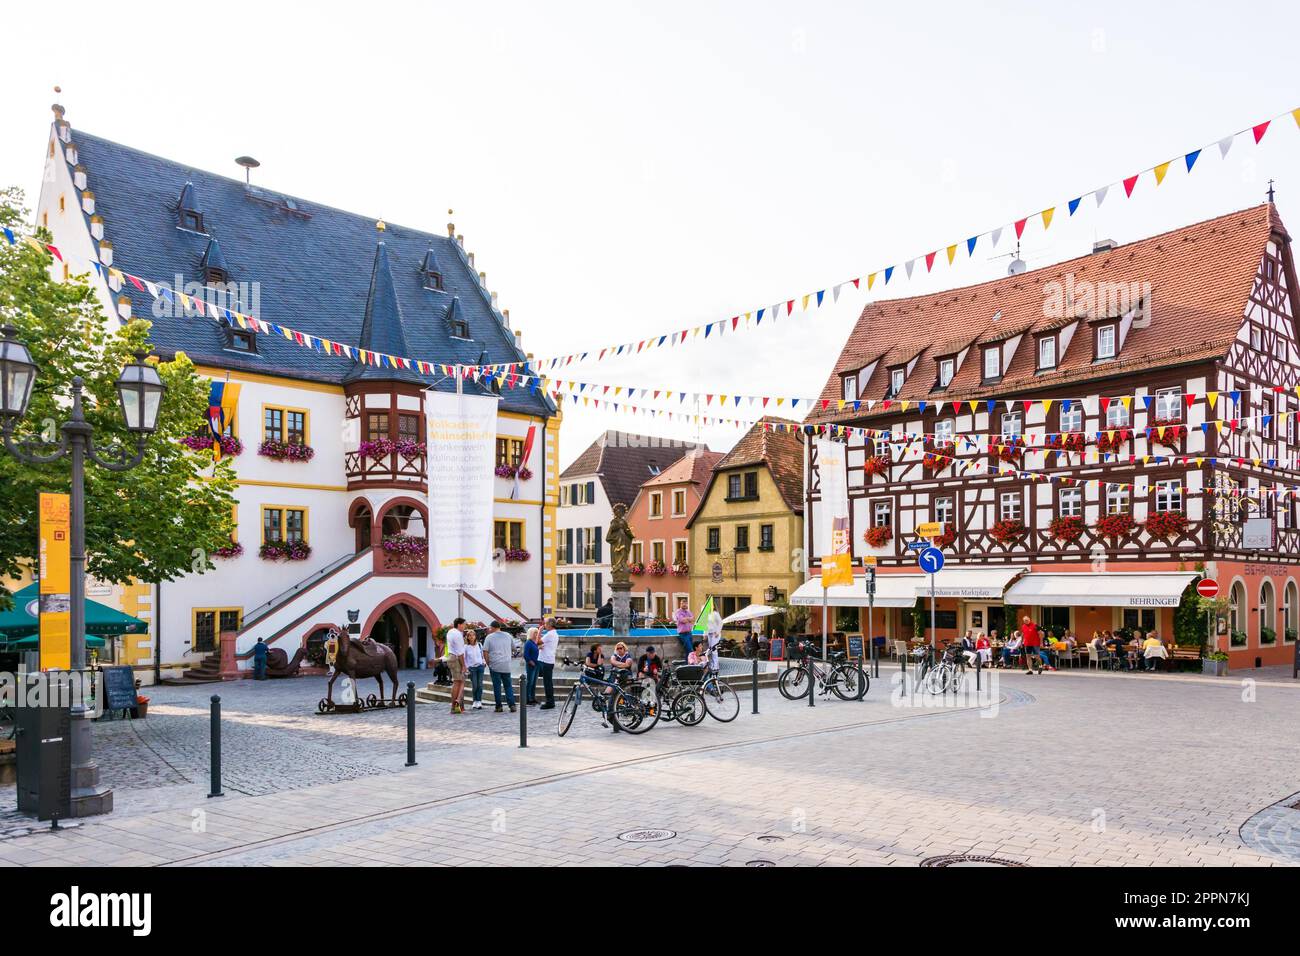 VOLKACH, Germania - 20 agosto: turisti presso la storica città vecchia di Volkach, Germania il 20 agosto 2017. Volkach è famosa per il suo annuale festival del vino Foto Stock